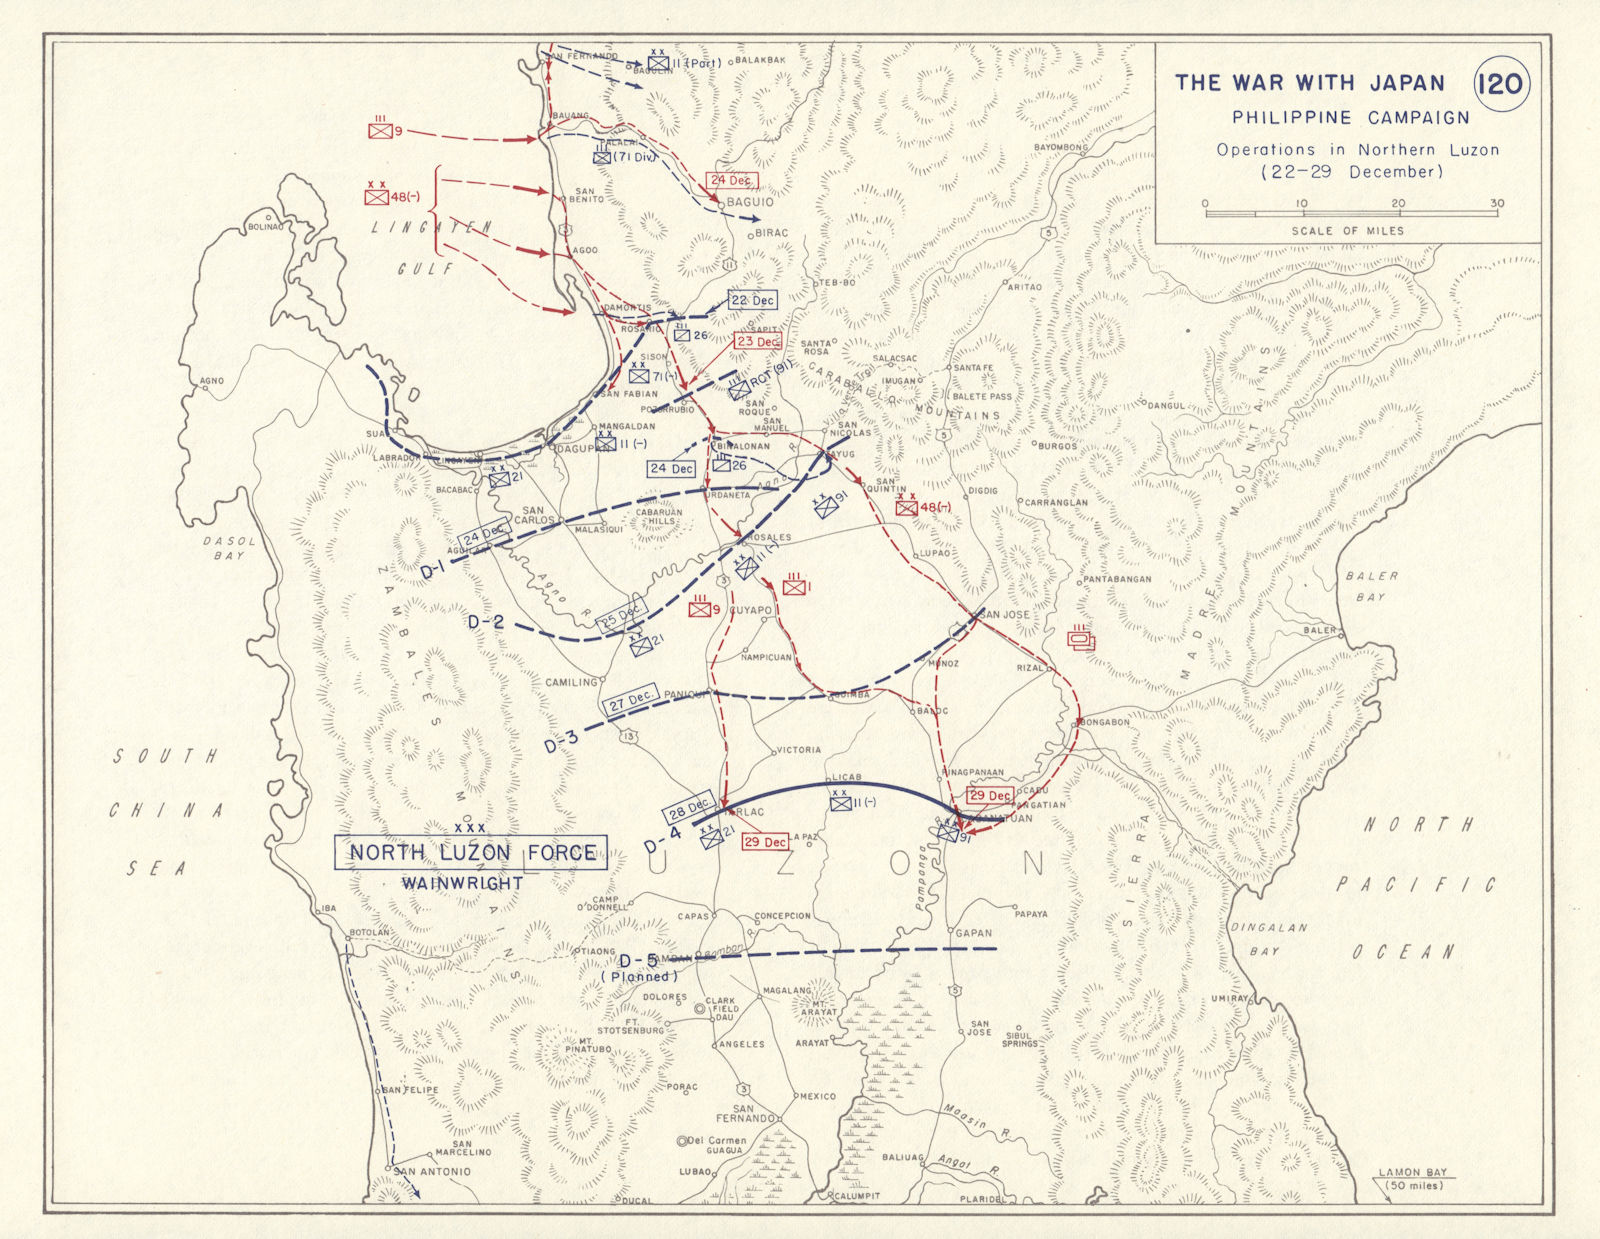 World War 2. Philippine Campaign. 22-29 December 1941 Northern Luzon 1959 map